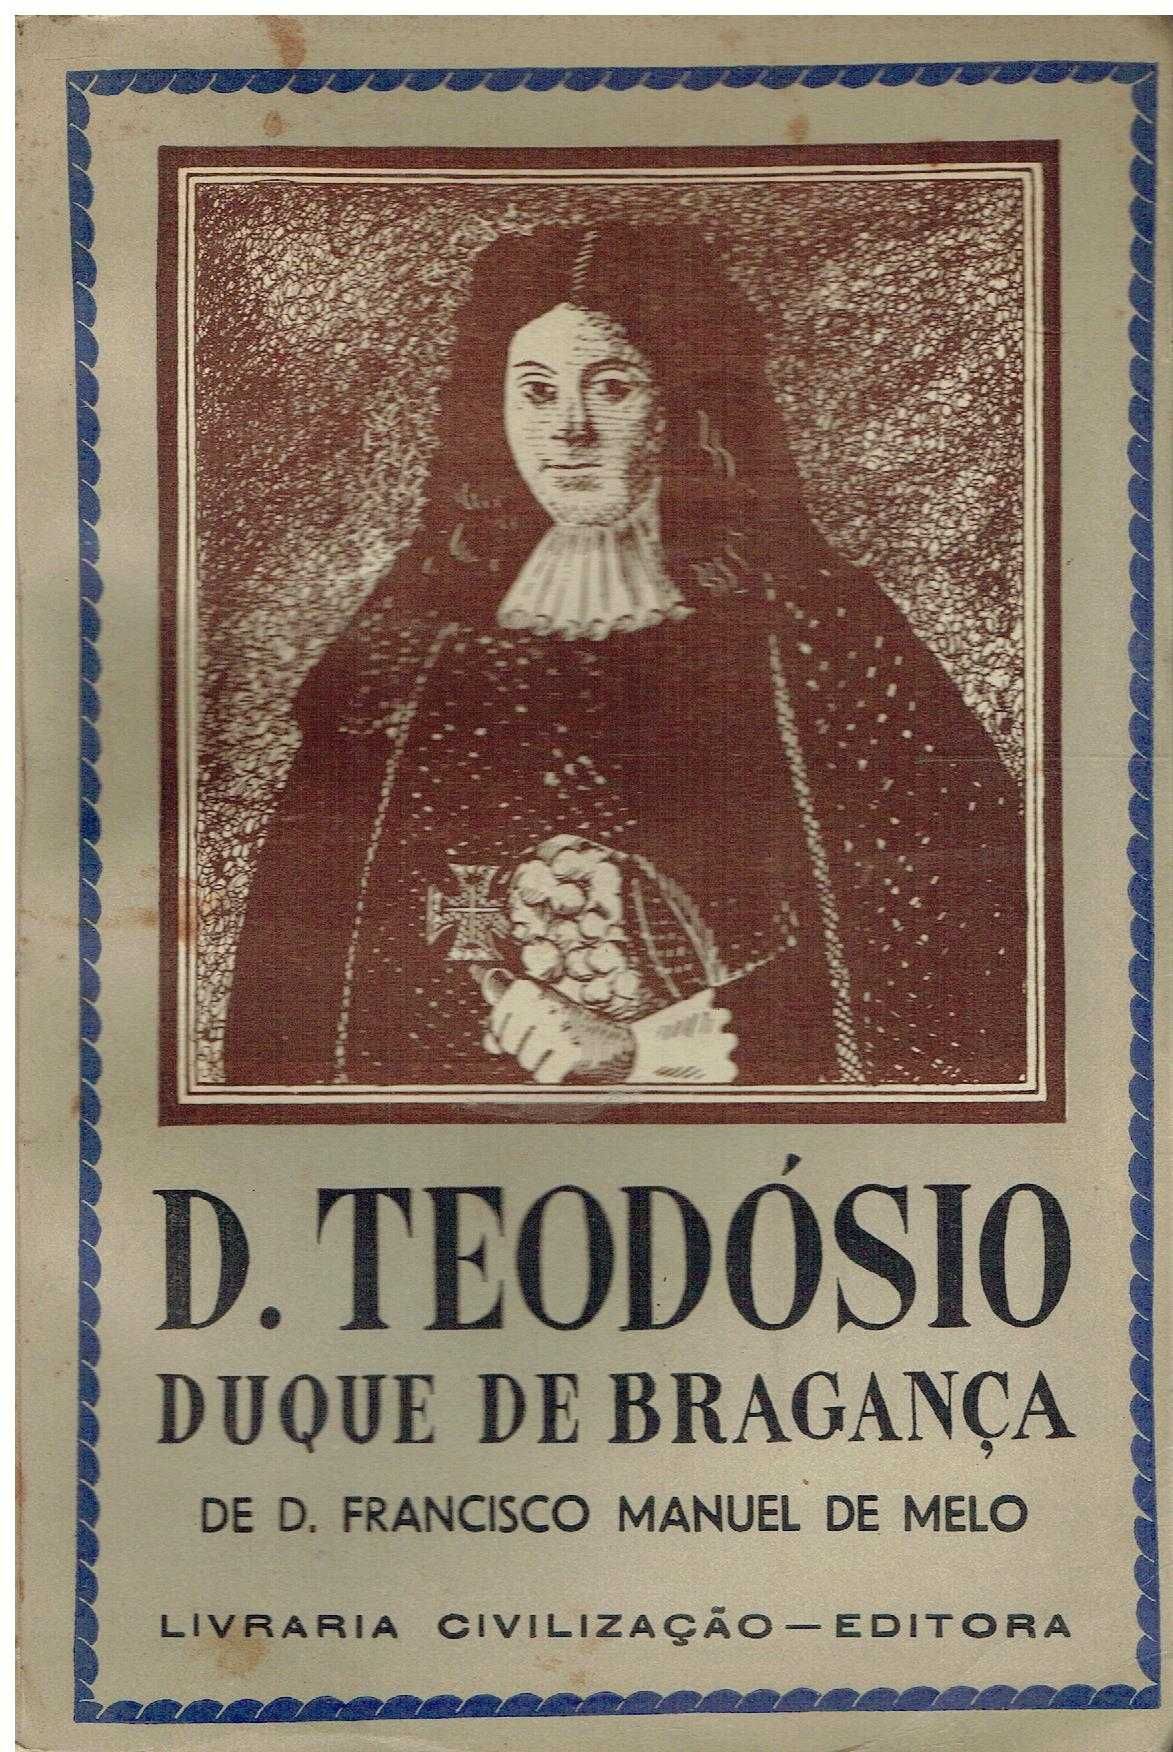 13986

D. Teodósio II  
de D. Francisco Manuel de Melo